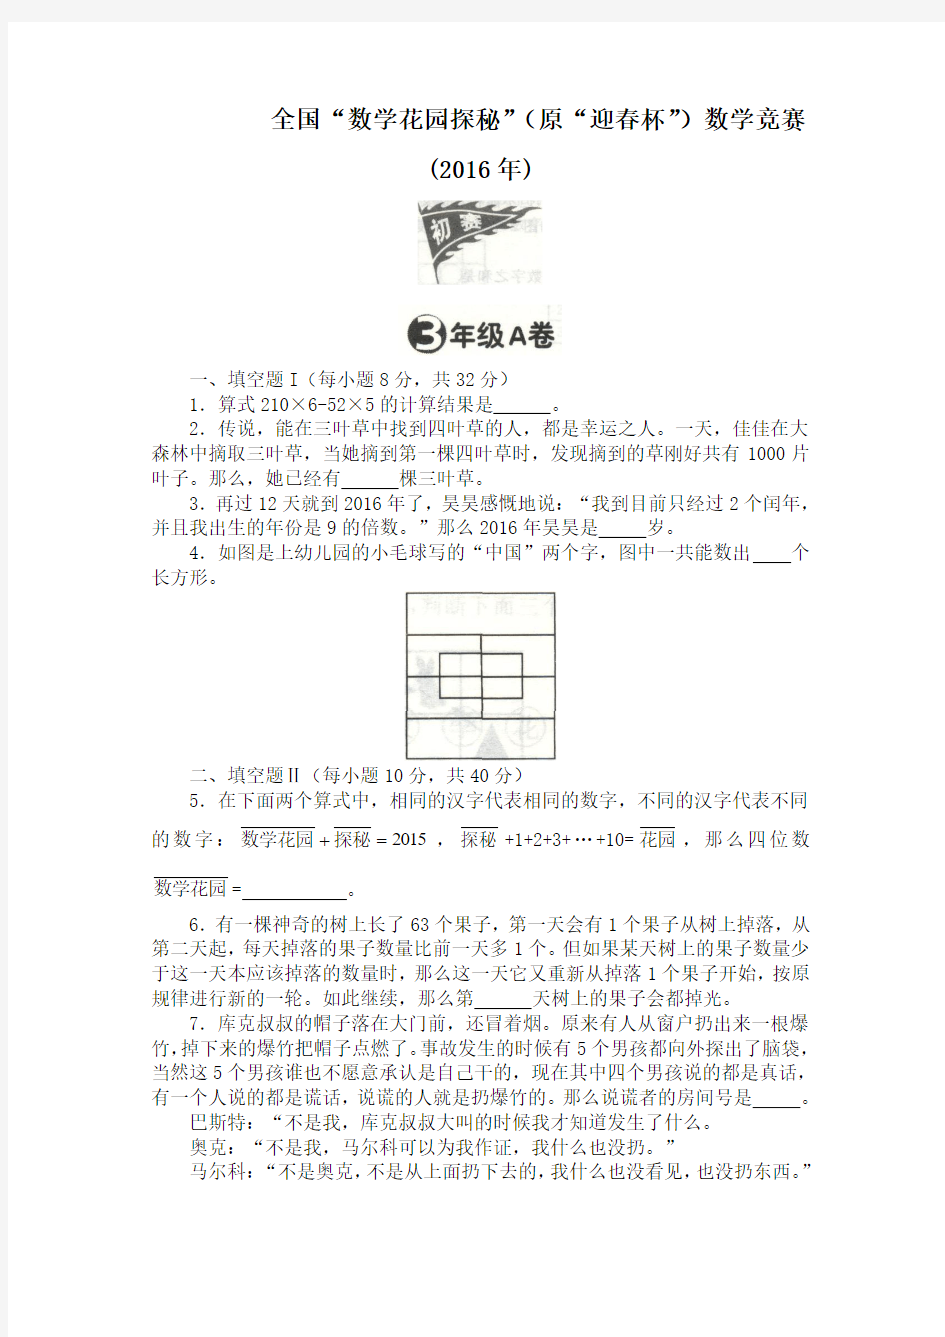 全国“数学花园探秘”(原迎春杯)数学竞赛(2016)